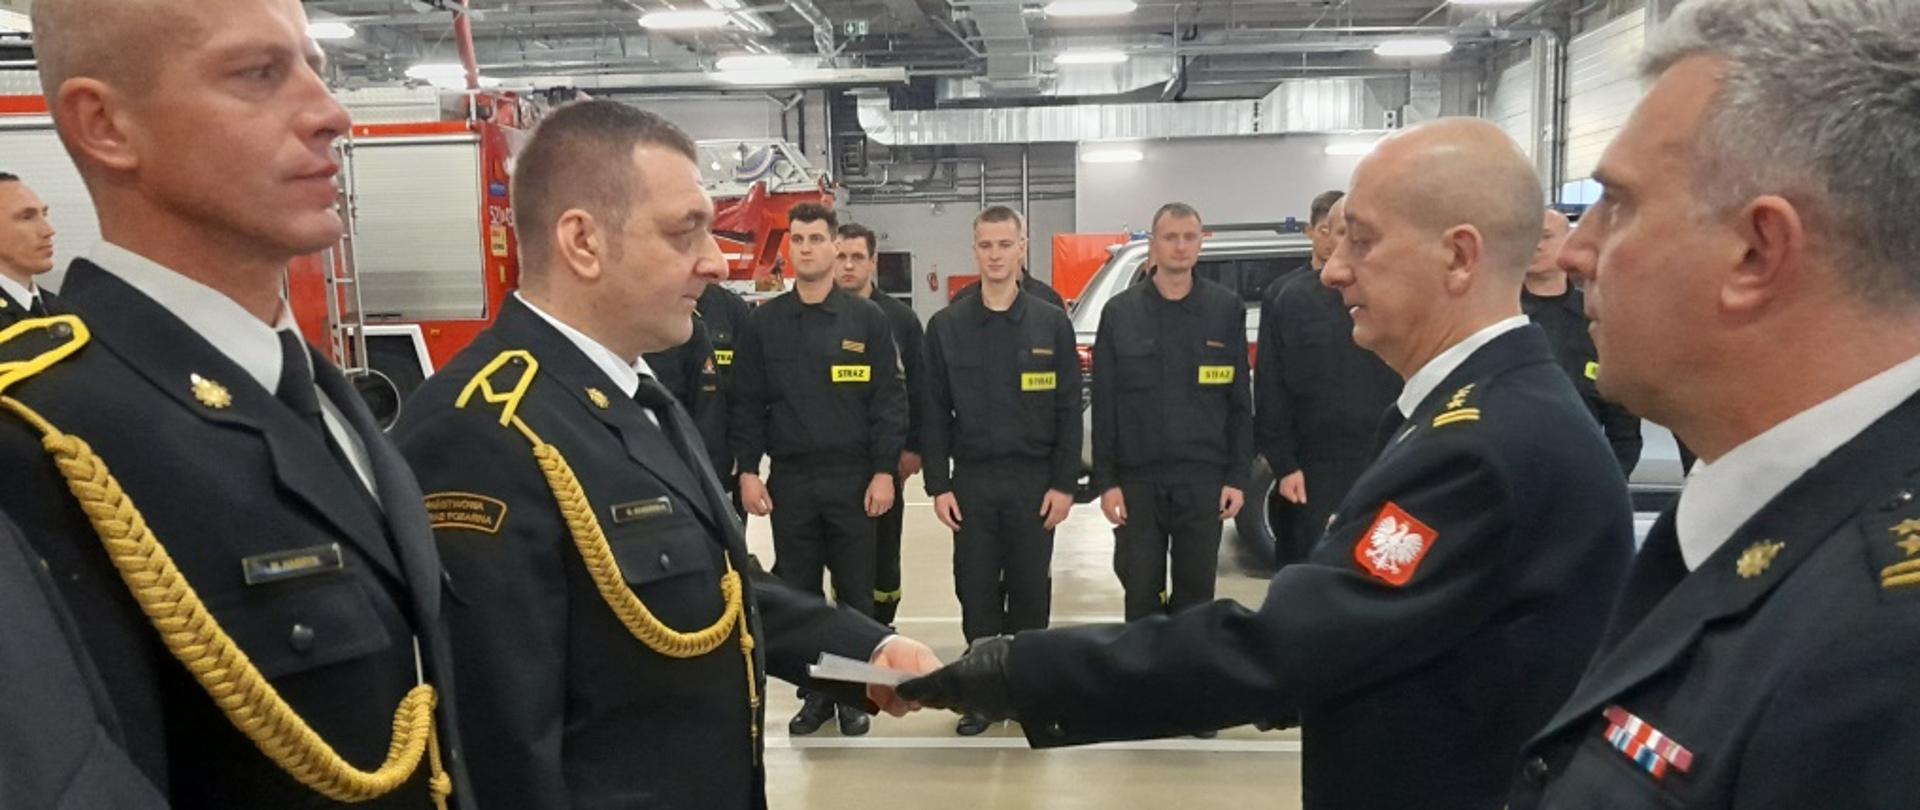 Komendant Miejski PSP wraz z Zastępcą wręczają awanse wyróżnionym strażakom. W tle strażacy oraz samochody ratowniczo - gaśnicze. 